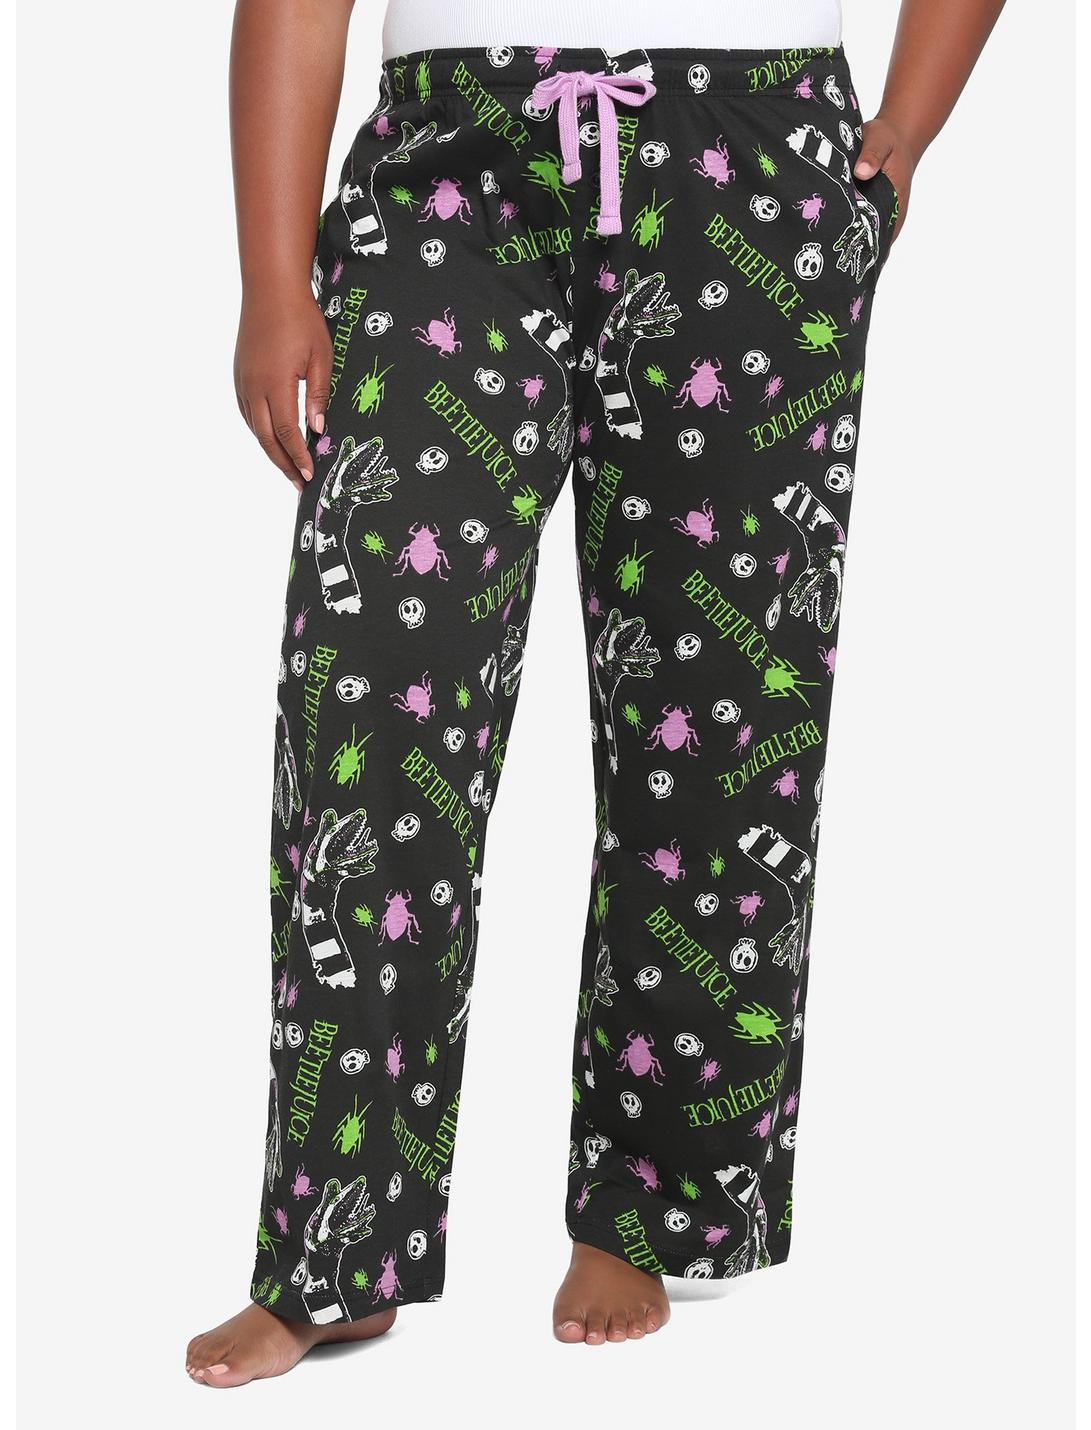 Beetlejuice Logos Pajama Pants Plus Size, MULTI, hi-res